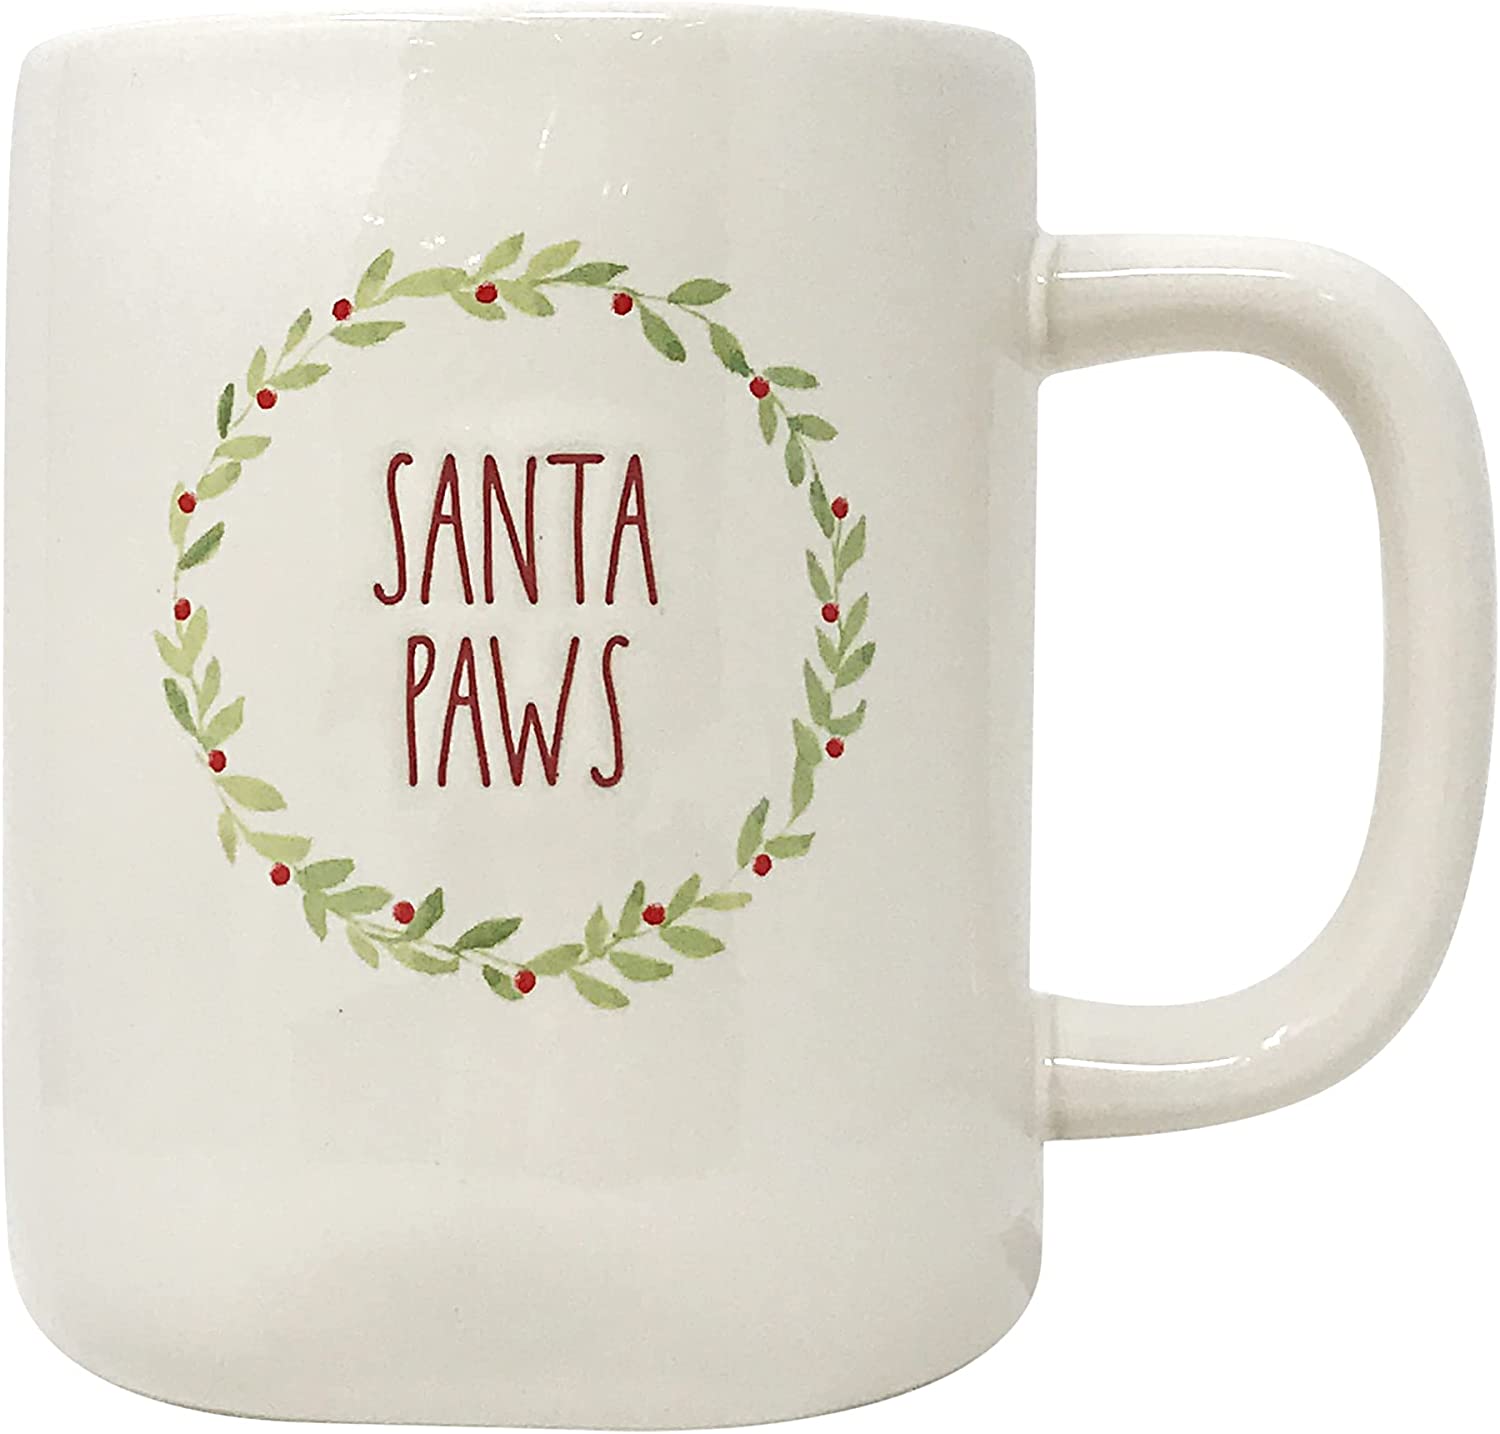 Rae Dunn White SANTA PAWS Mug for Christmas with Red LL Letter Tea Mug